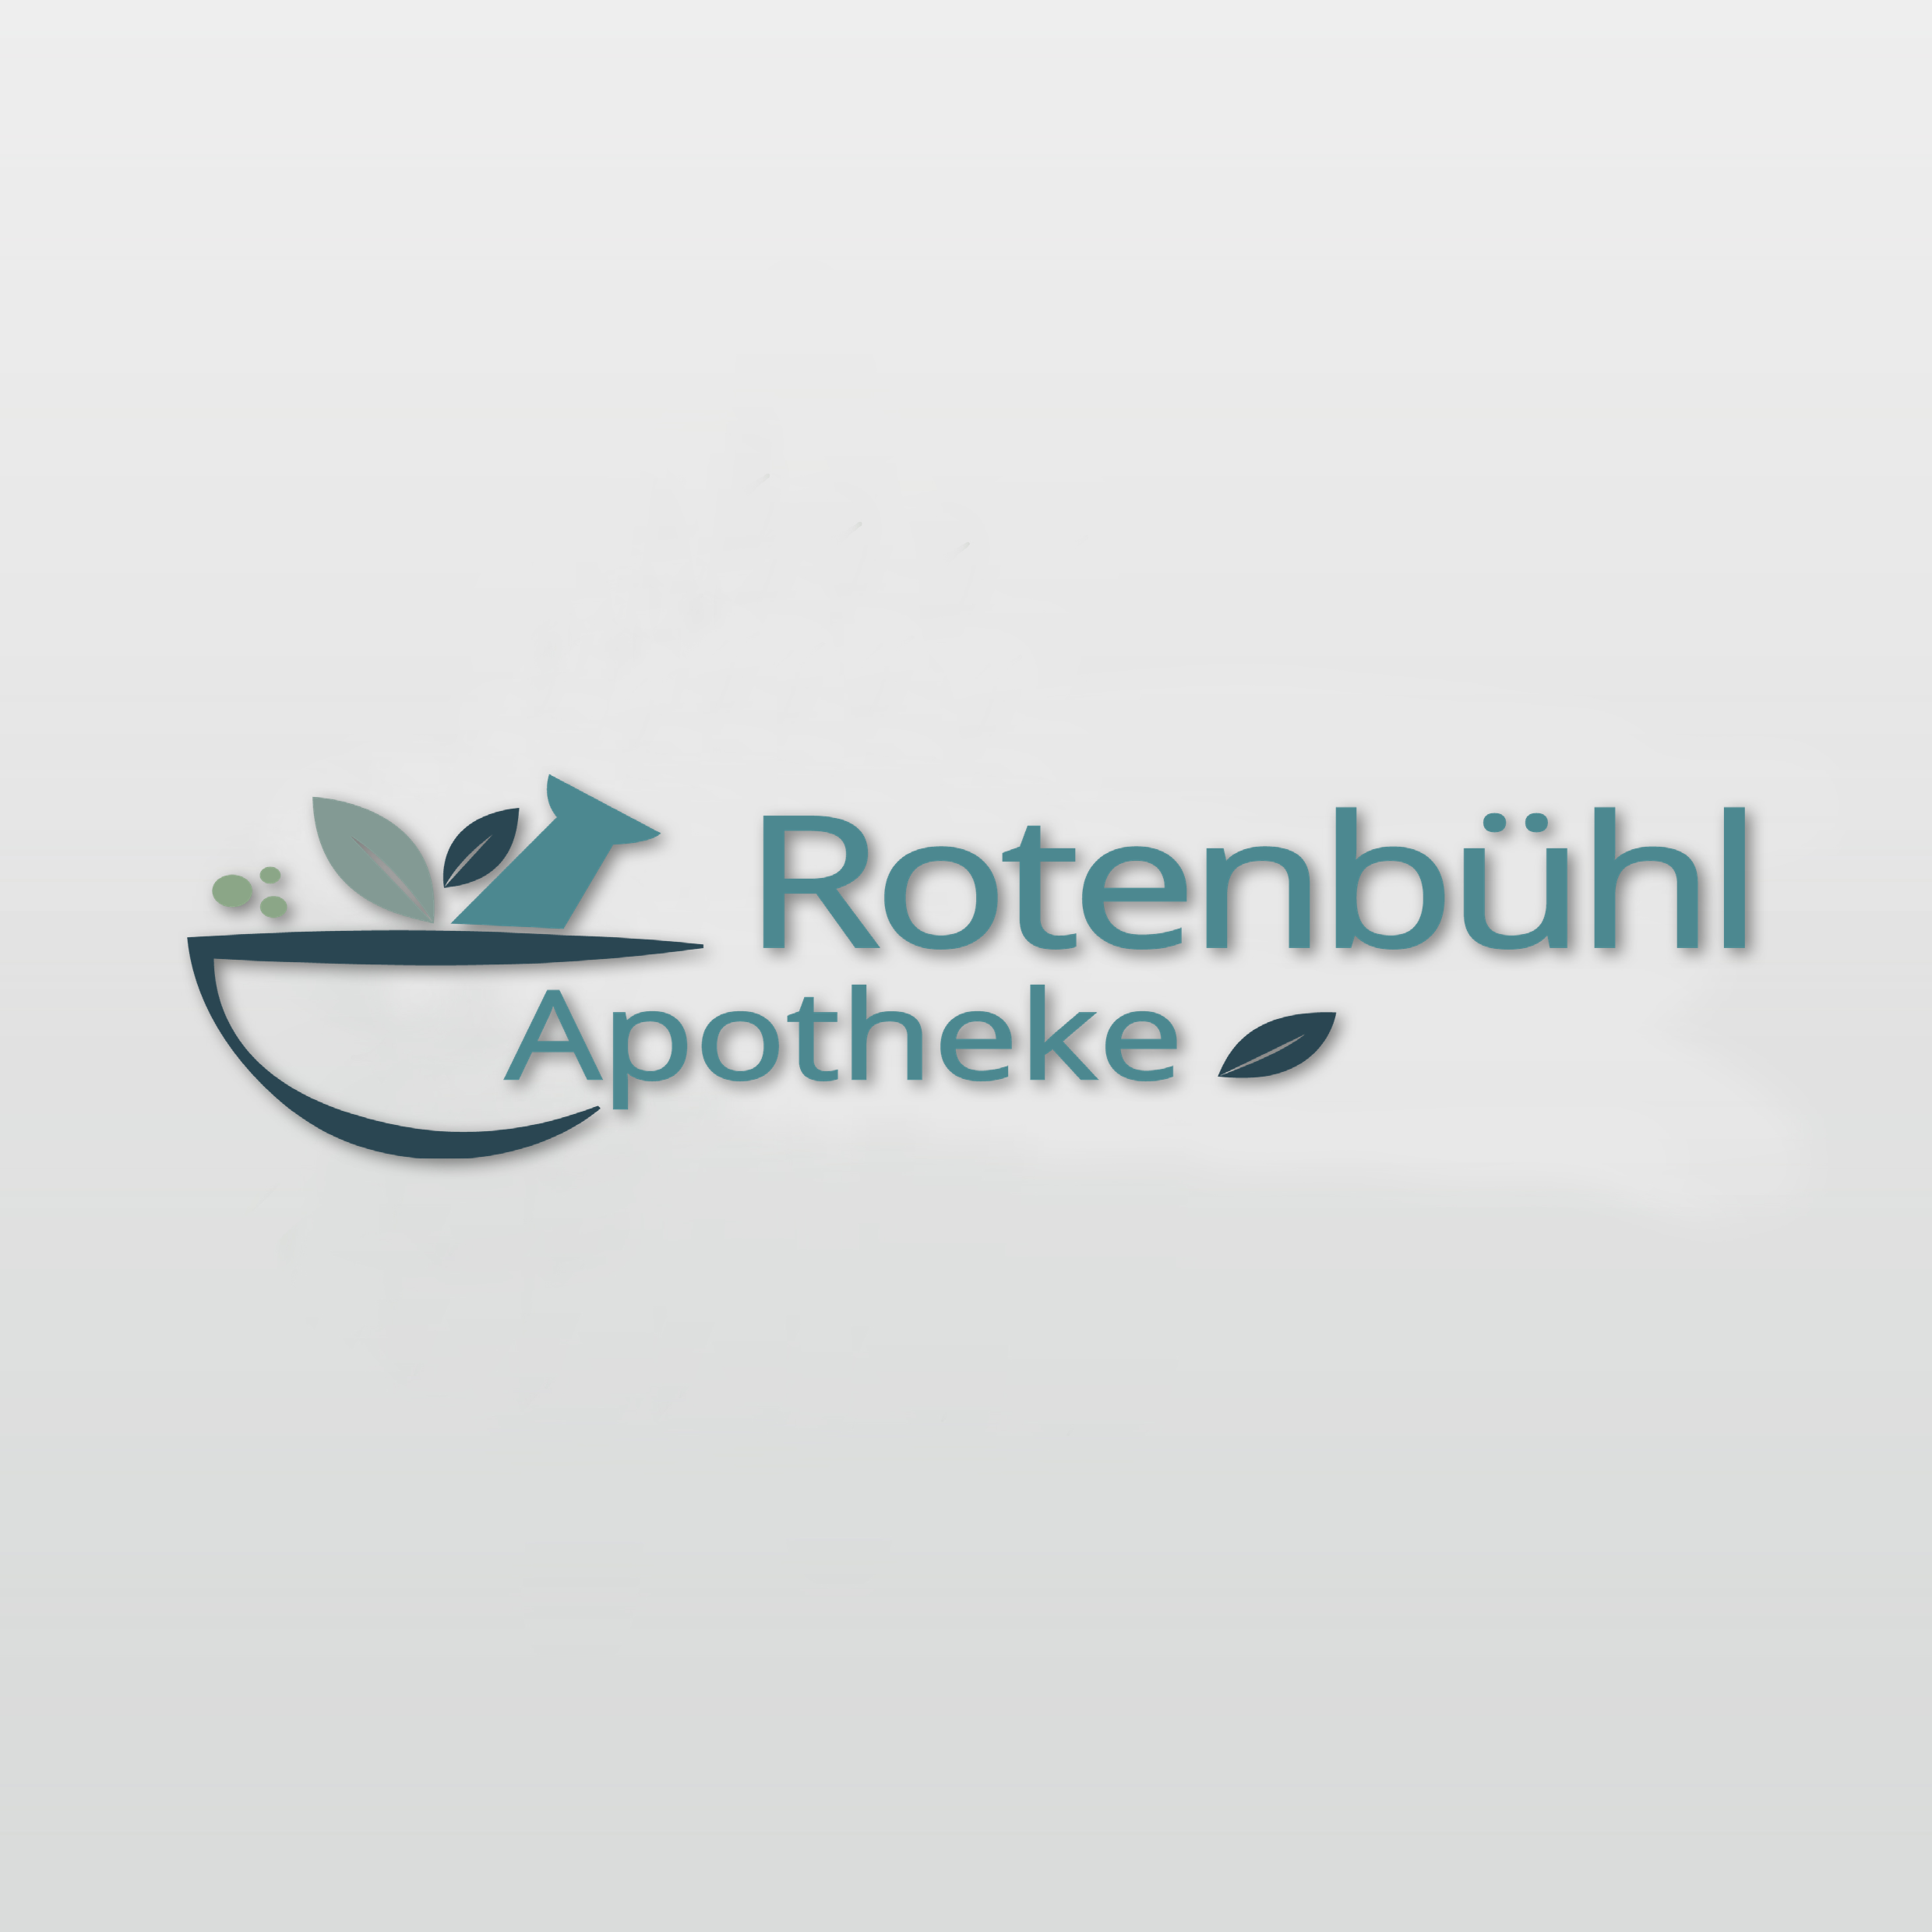 Rotenbuehl Apotheke Logo